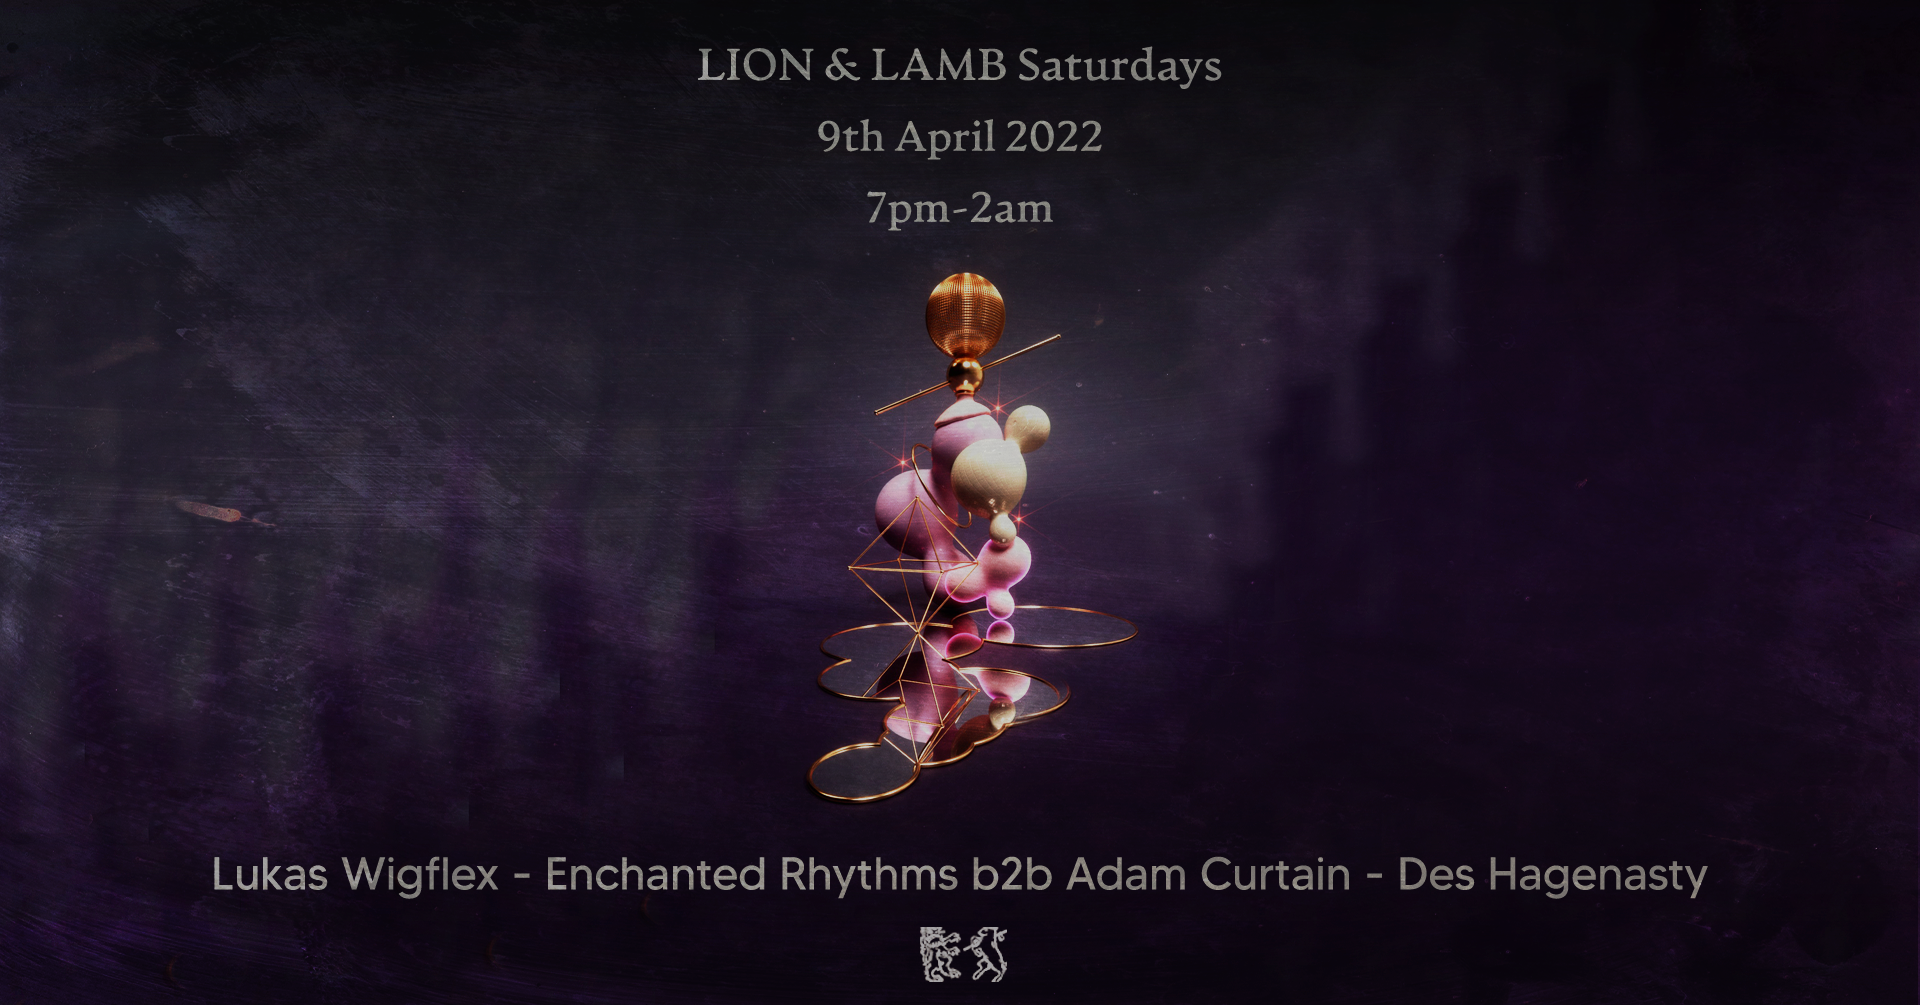 Lion & Lamb Saturdays with Lukas Wigflex, Enchanted Rhythms b2b Adam Curtain and Des Hagenasty - Página frontal